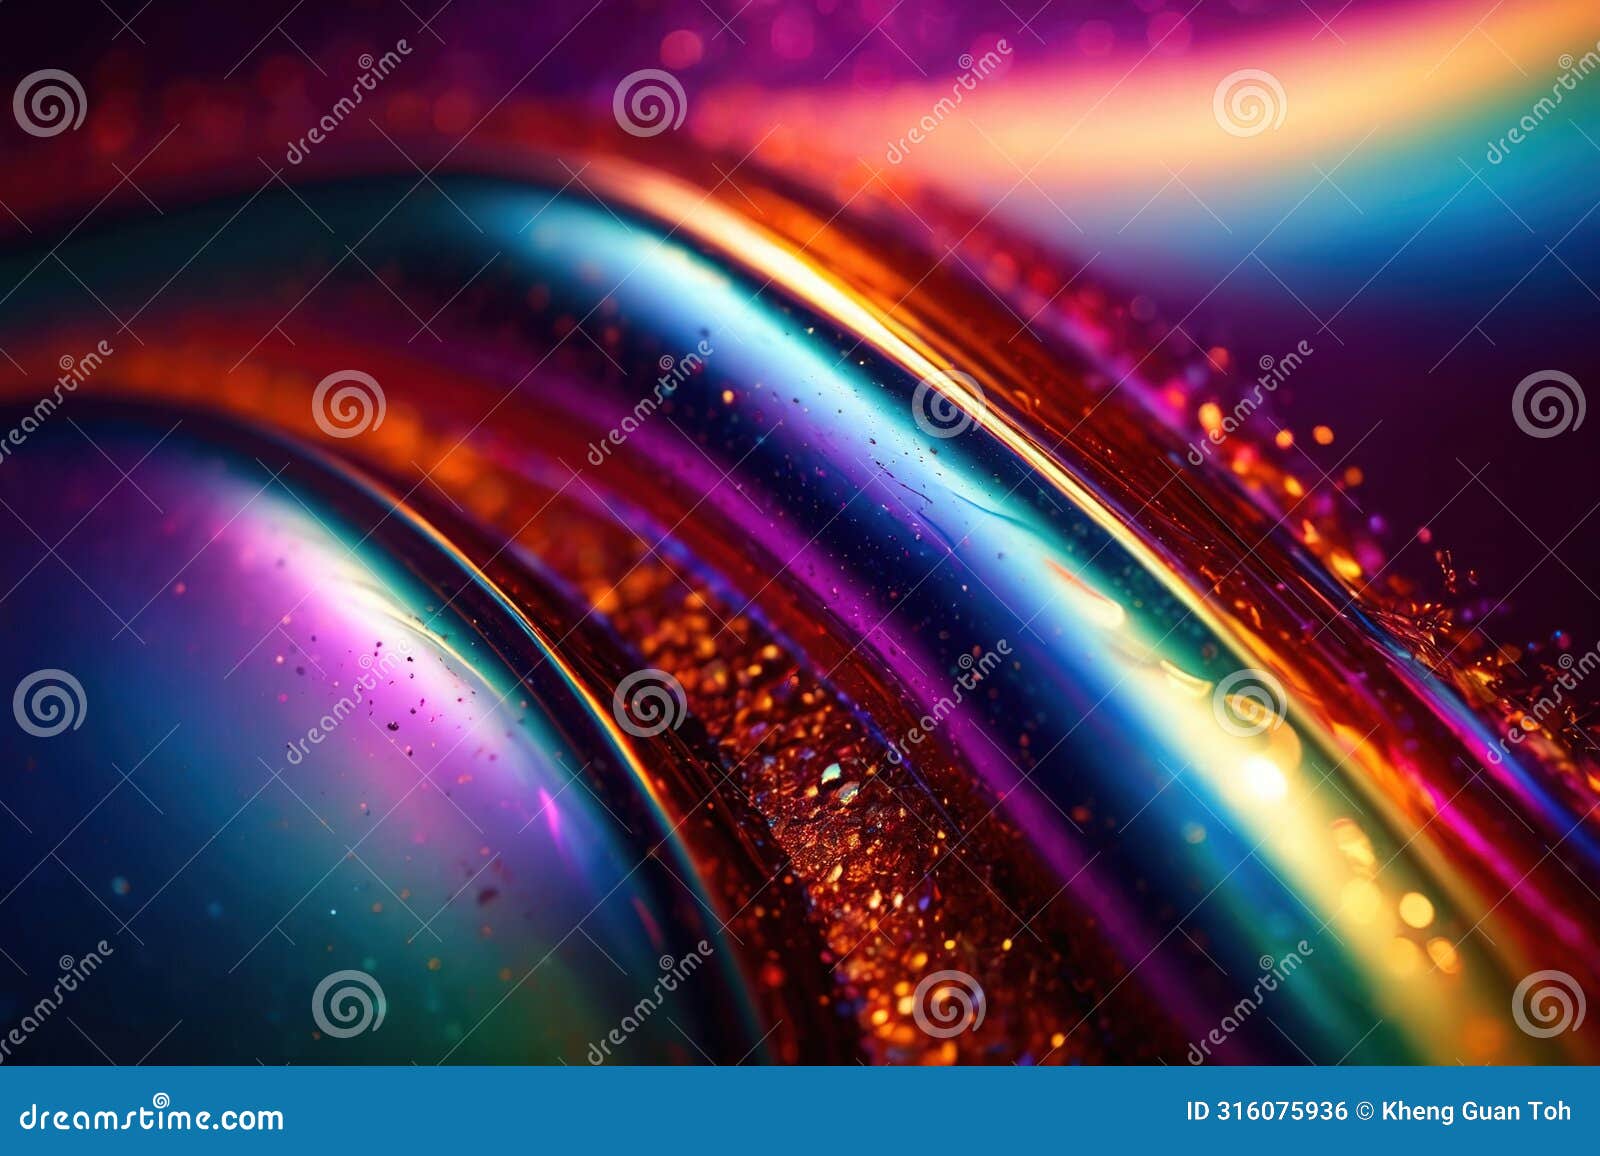 iridescent rainbow glitter sheen, abstract pattern wallpaper background texture